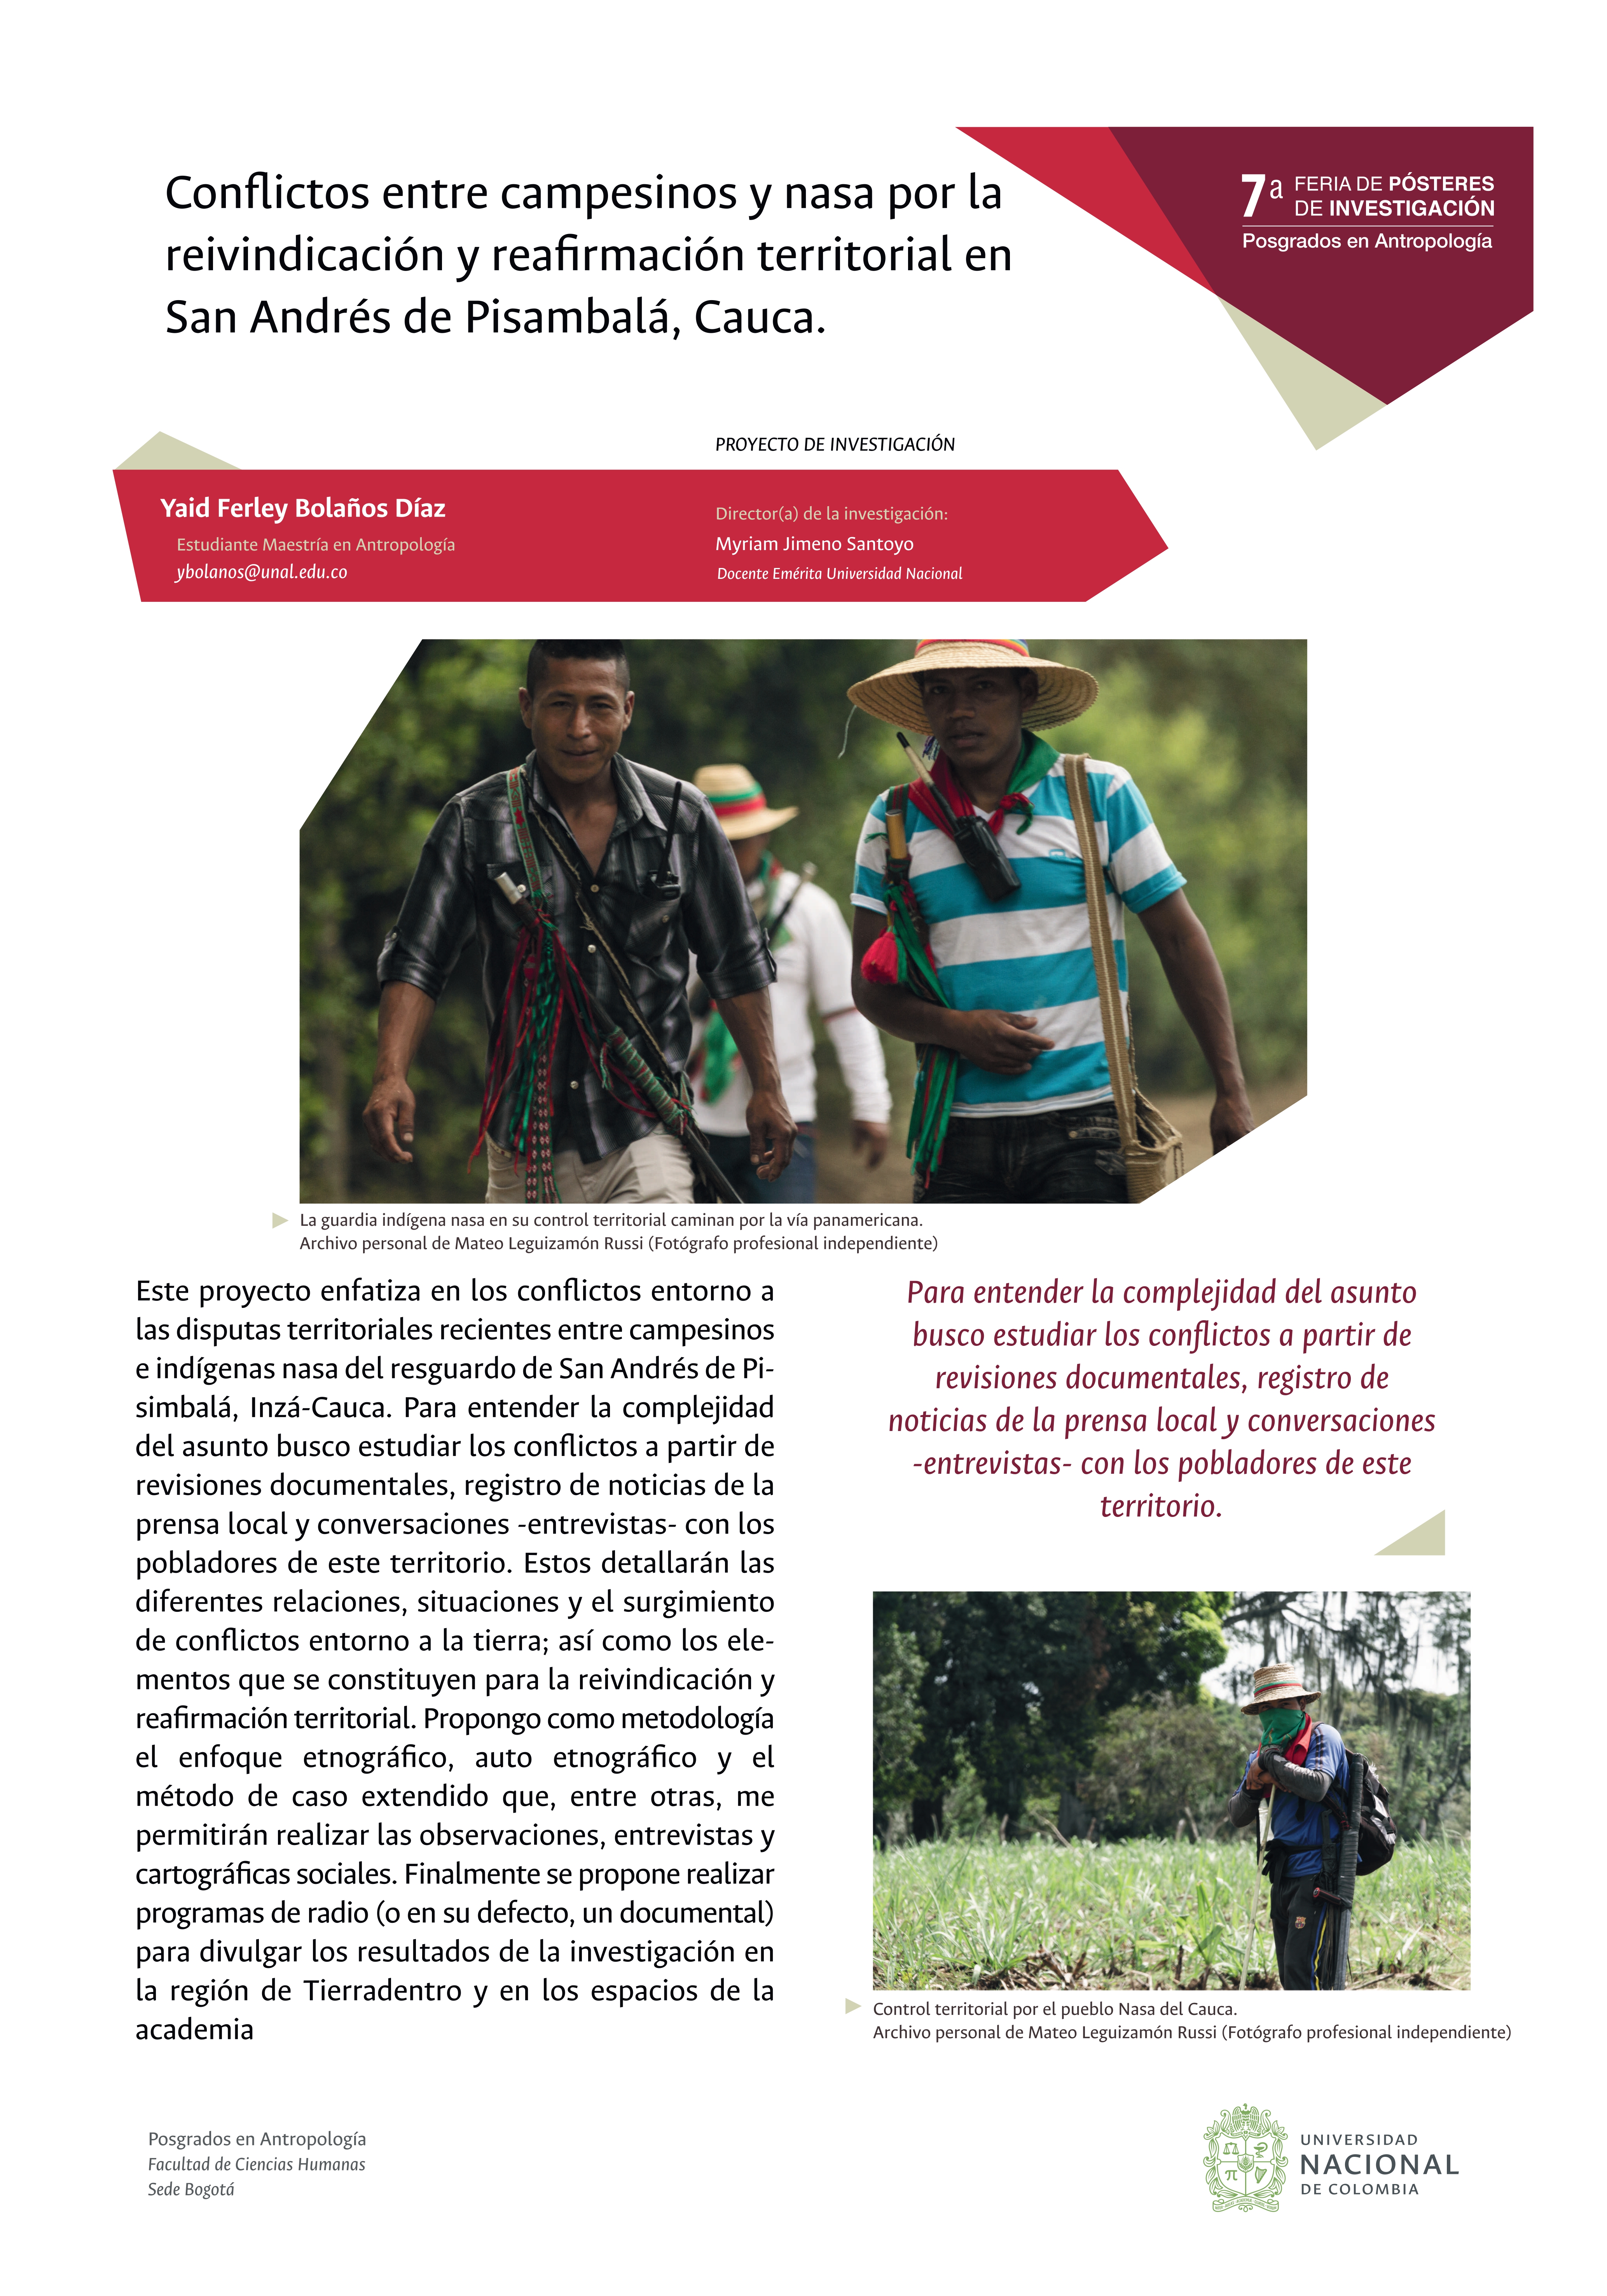 Conflictos entre campesinos y nasa en San Andrés de Pisimbalá, Cauca